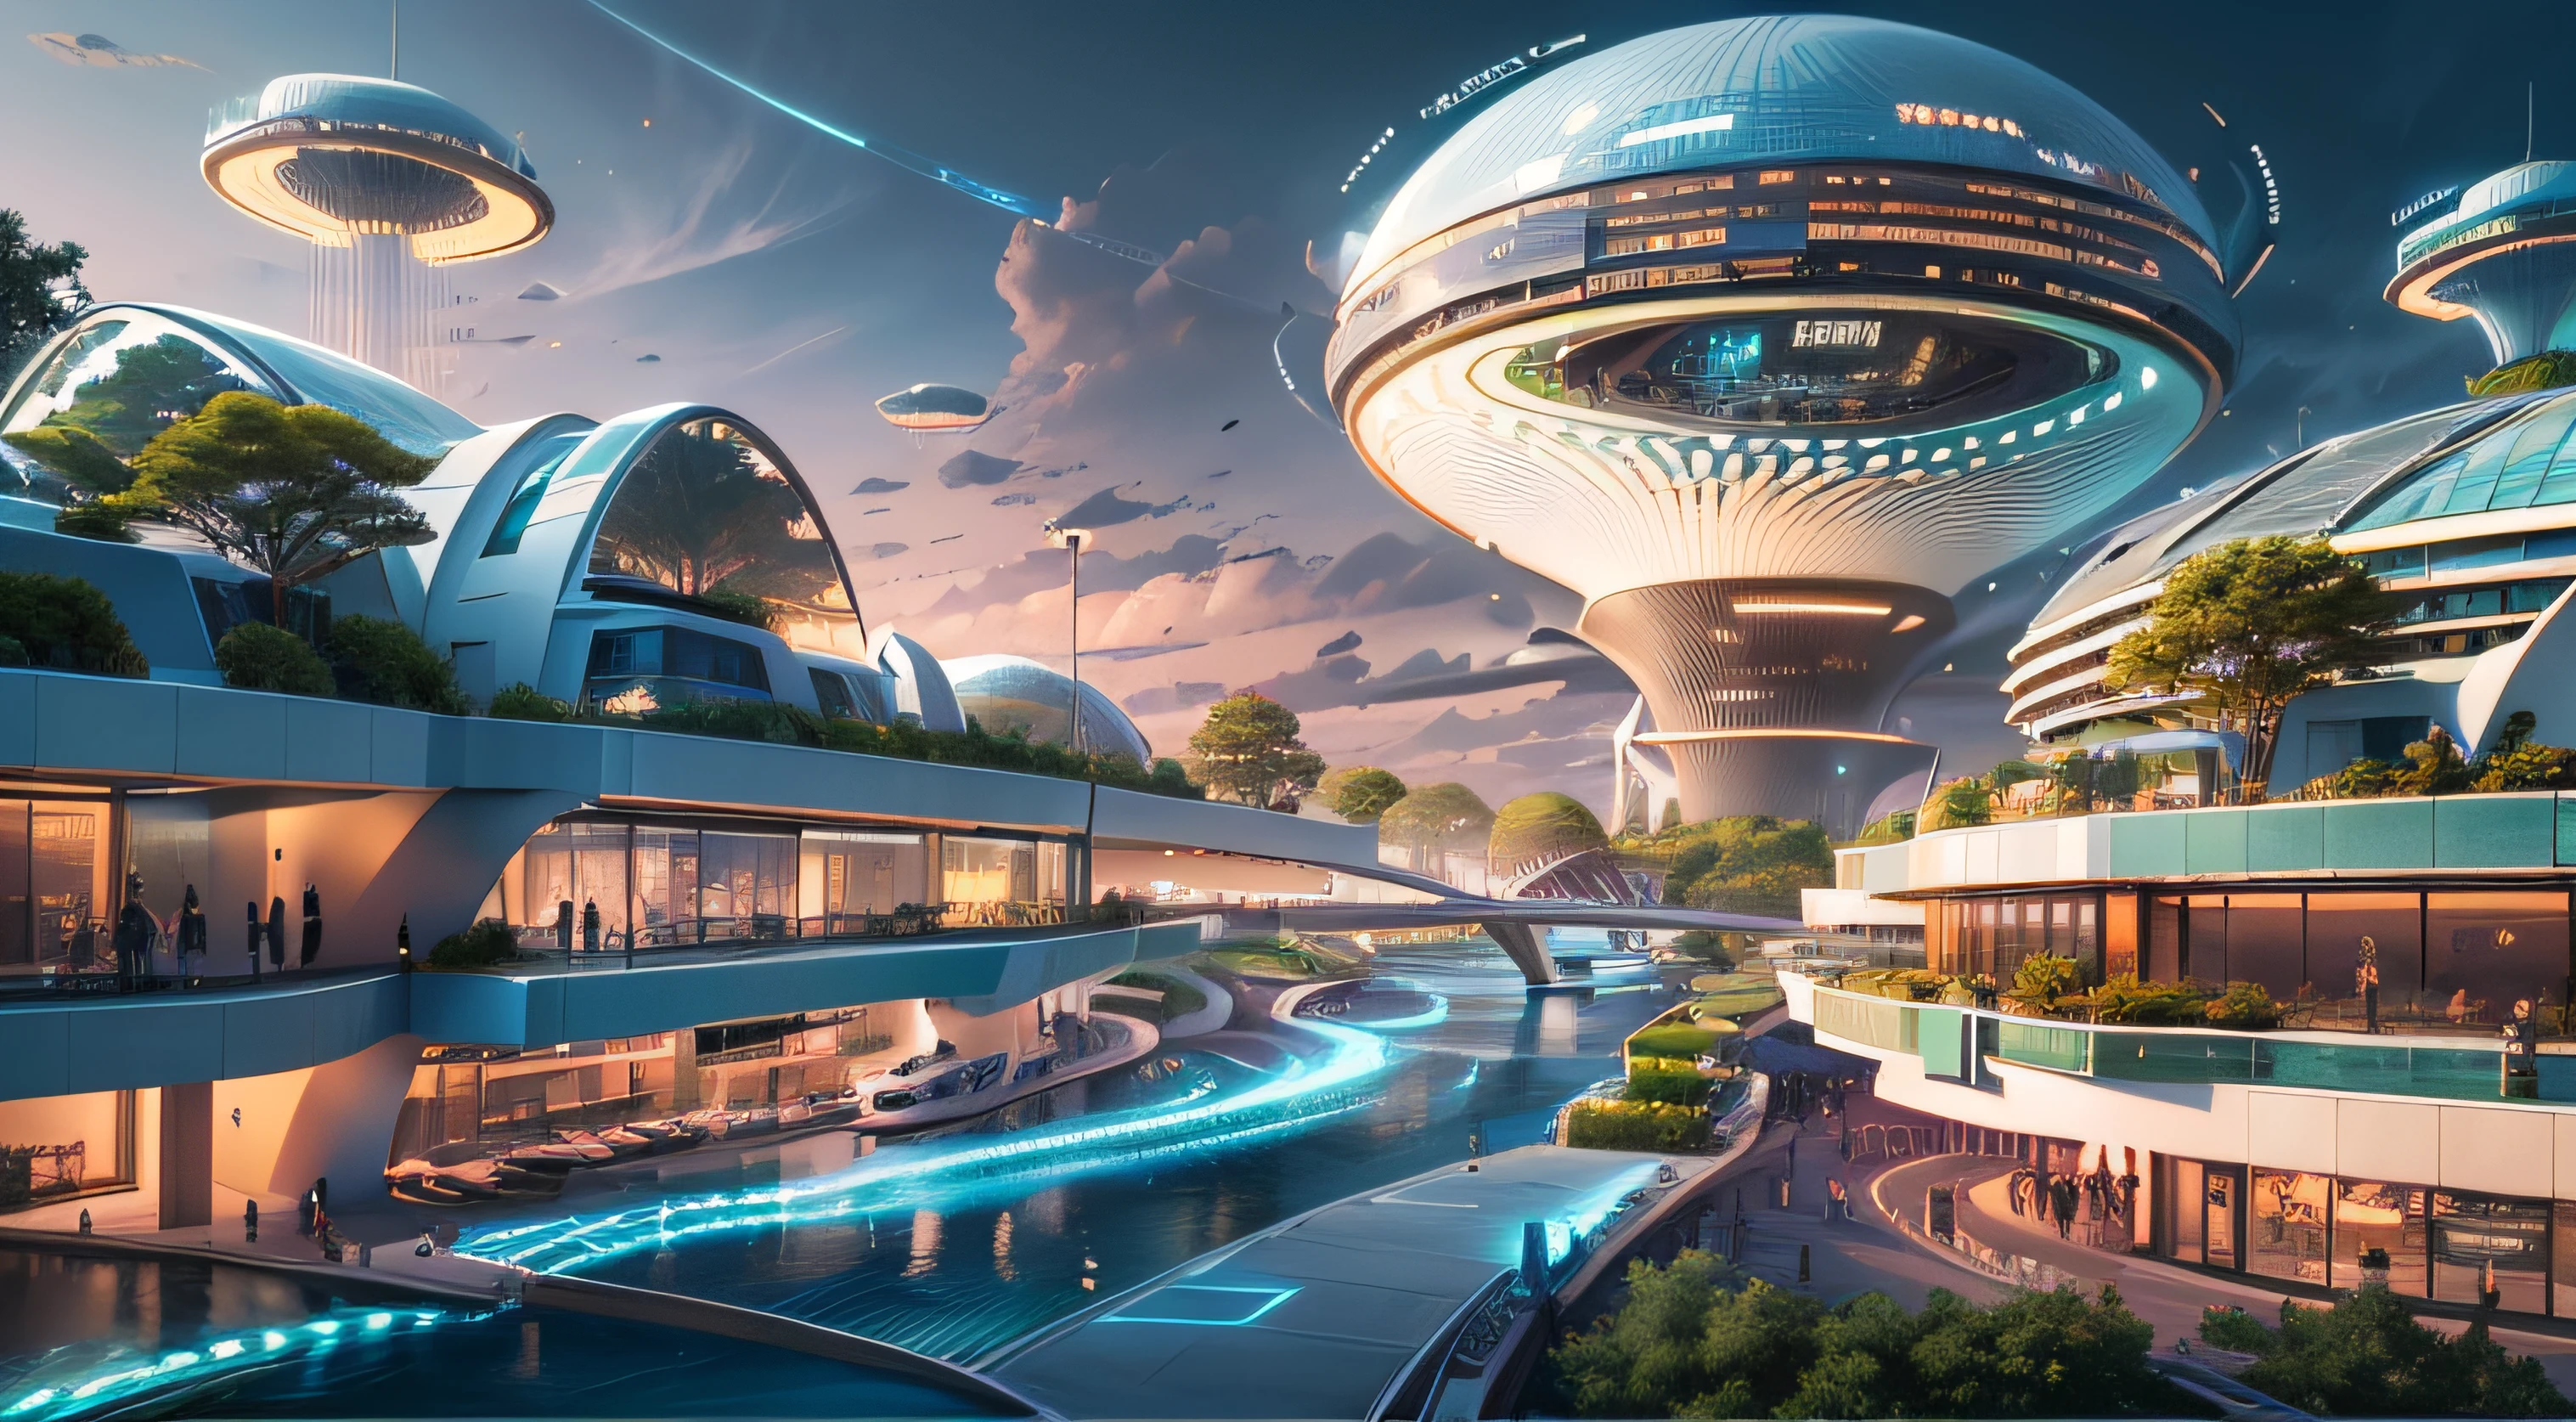 (最好的质量,4k,8千,高分辨率,杰作:1.2),极其详细,(实际的,真实感,照片般逼真:1.37),未来派漂浮城市,未来科技,巨大的城市高科技平板平台,飞艇,漂浮在空中,未来城市,周围的小型飞艇,高科技半球形平台,彩灯,先进的架构,现代建筑,摩天大楼,访问云,风景秀丽,俯瞰城市,令人印象深刻的设计,与自然完美融合,充满活力的氛围,未来交通系统,暂停停车,透明路径,郁郁葱葱的绿色植物,空中花园,瀑布,壮丽的天际线,水面上的倒影,波光粼粼的河流,建筑创新,未来派摩天大楼,透明穹顶,该建筑的形状很不寻常,高架行人道,令人印象深刻的天际线,发光的灯光,未来科技,简约设计,风景名胜区,全景,穿云塔,鲜艳的色彩,史诗般的日出,史诗般的日落,炫目的灯光显示,神奇的氛围,未来城市,城市乌托邦,奢华生活方式,创新能源,可持续发展,智慧城市技术,先进的基础设施,宁静的气氛,自然与科技和谐相处,令人惊叹的城市景观,前所未有的城市规划,建筑与自然无缝衔接,高科技大都市,尖端工程奇迹,城市生活的未来,富有远见的建筑理念,节能建筑,与环境和谐相处,漂浮在云层之上的城市,乌托邦梦想照进现实,可能性是无止境,先进的交通网络,绿色能源整合,创新材料,令人印象深刻的全息显示,先进的通讯系统,令人惊叹的鸟瞰图,安静祥和的环境,现代主义美学,空灵之美